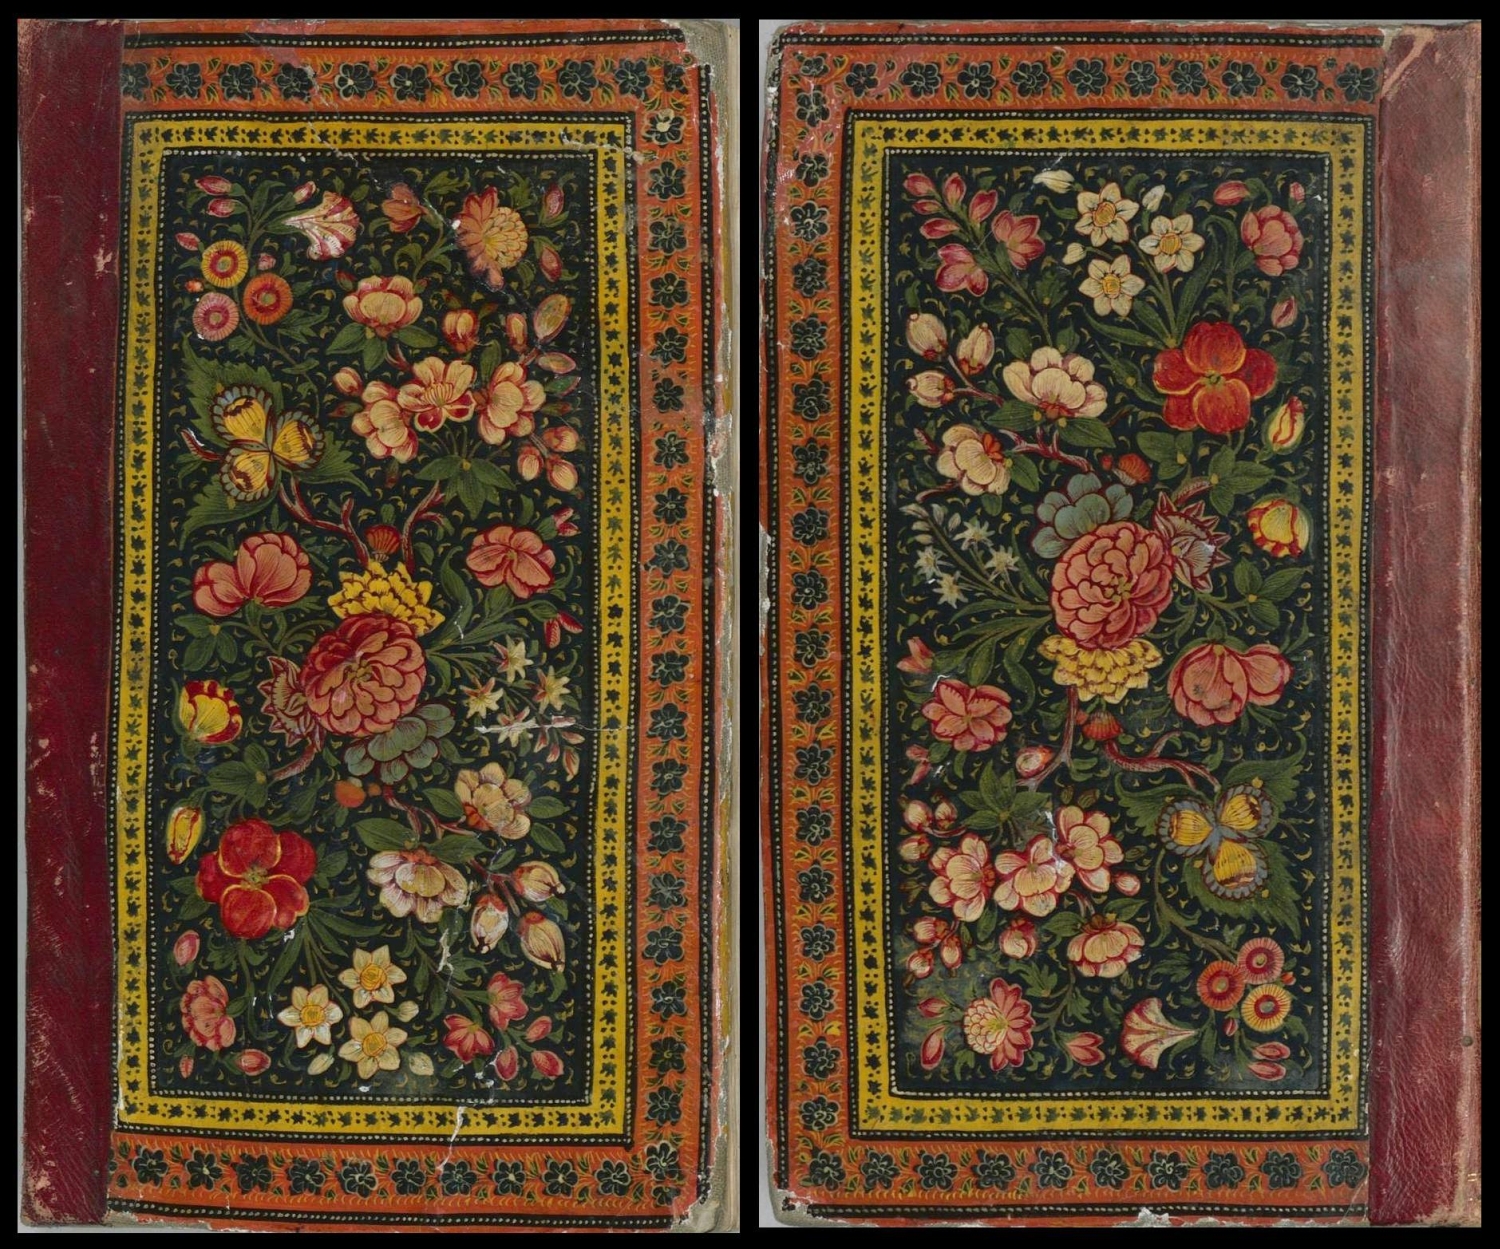 flowered Persian manuscript covers